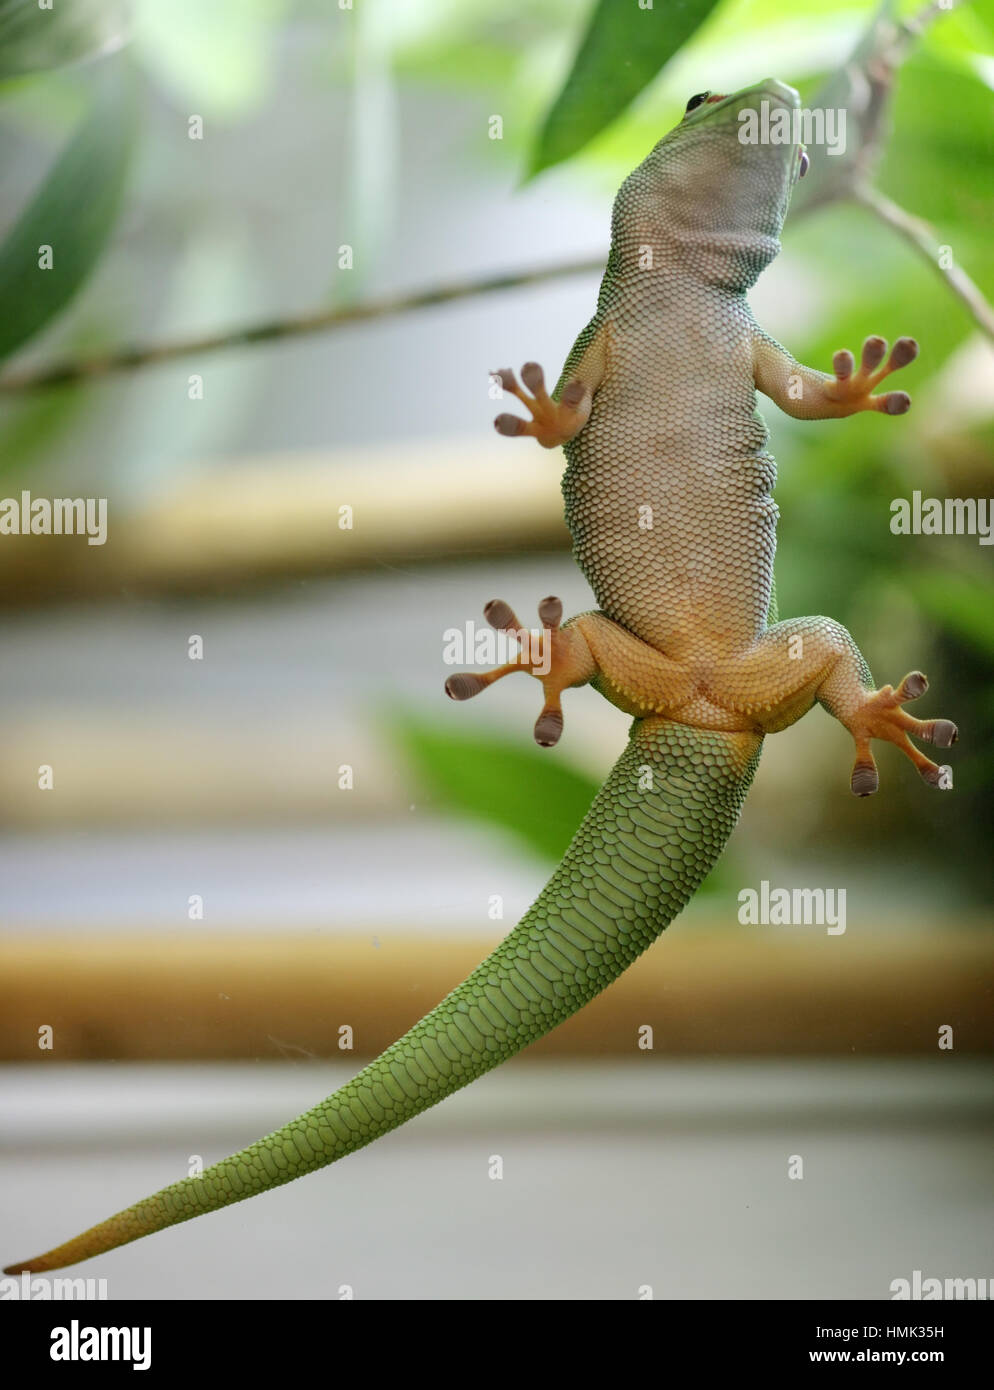 Madagascar giant day gecko (Phelsuma madagascariensis grandis) clinging to glass, captive, Germany Stock Photo